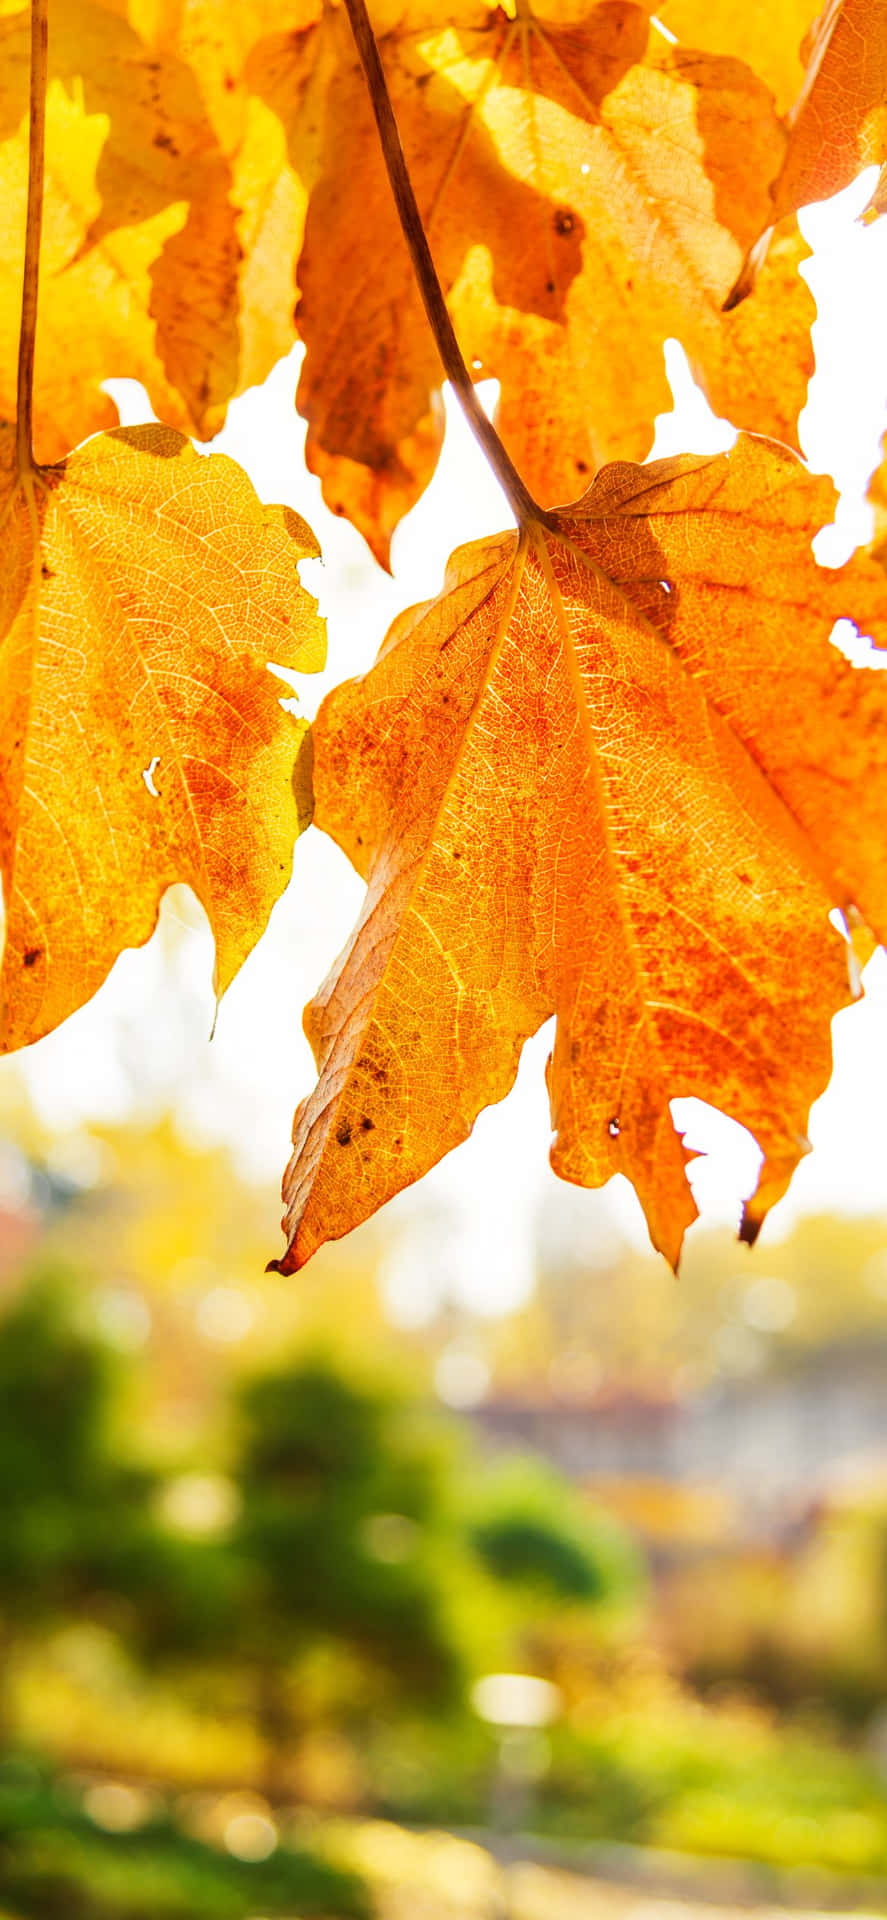 Bildein Atemberaubender Blick Auf Lebendige Herbstlaub-farben